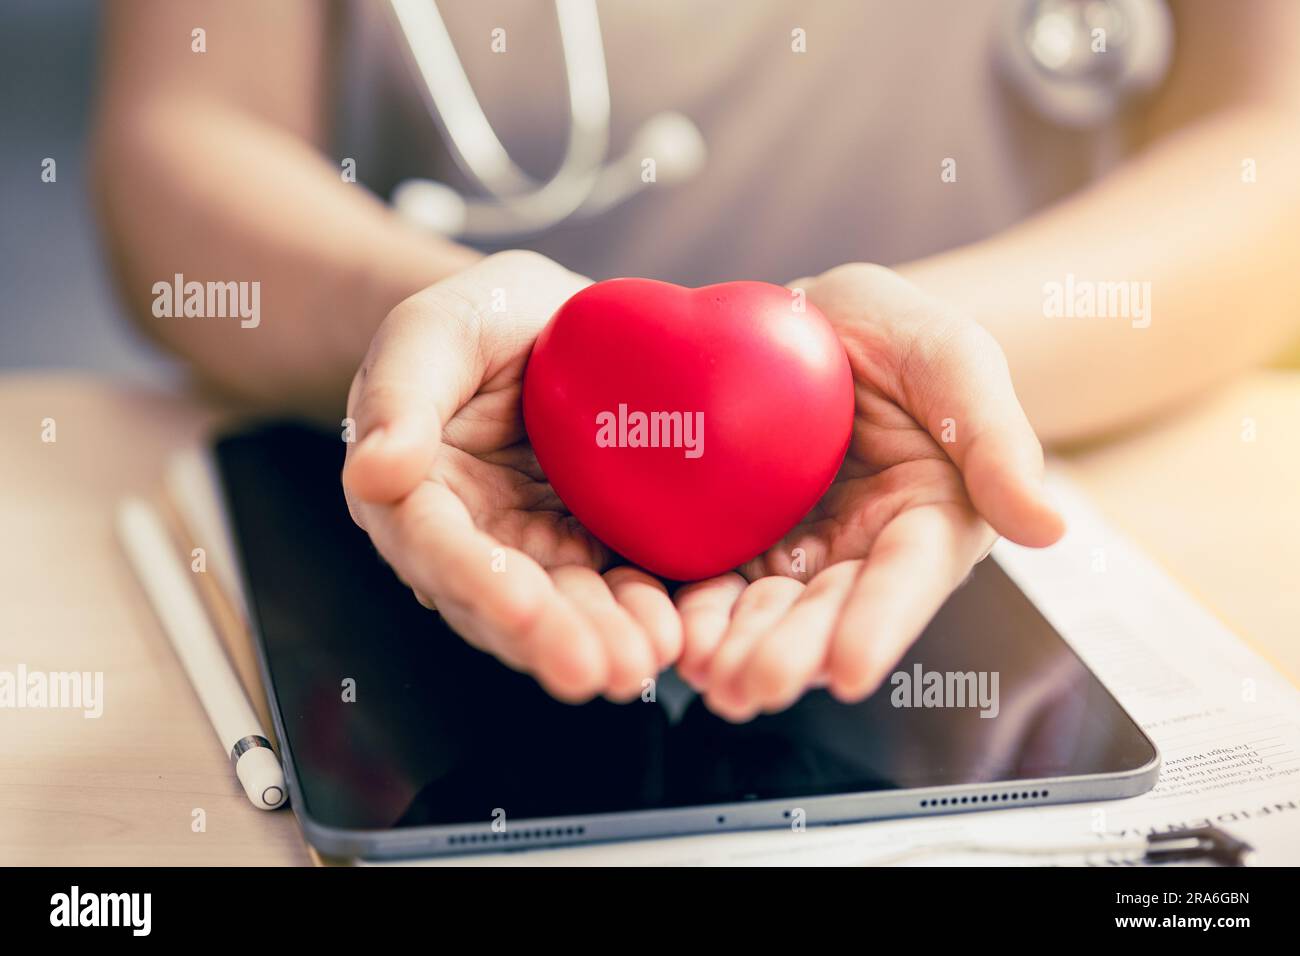 Arzt Hand mit roten Herzzeichen helfen Menschen mit gesundem Herzen zu unterstützen und das Bewusstsein für Bluthochdruck Herzinfarkt Schutz Gesundheit che zu erhöhen Stockfoto